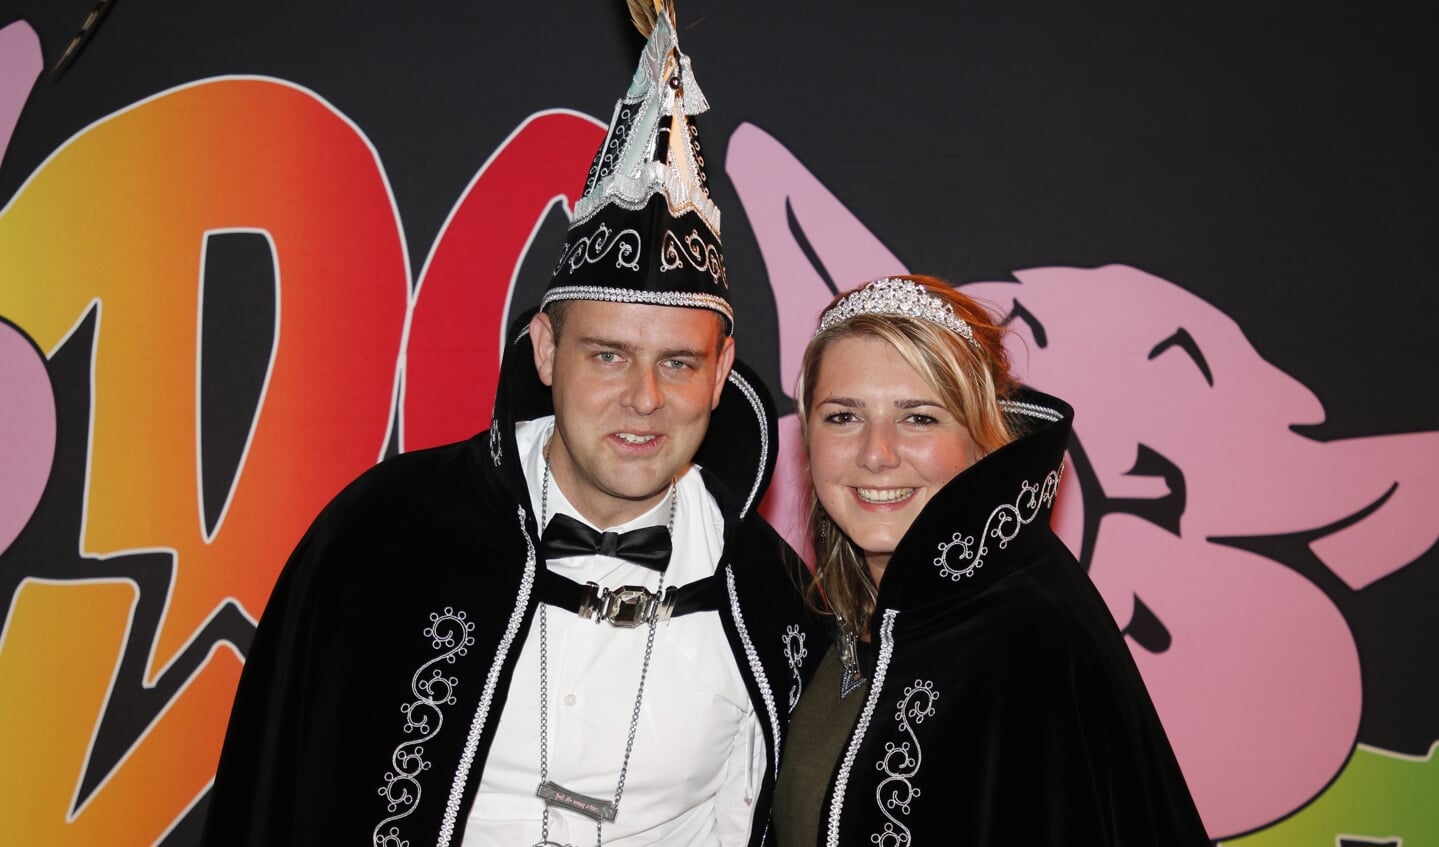 Prins Walter Kuijpers en Aimee Stax  van Beugen. (foto: Bas Delhij)